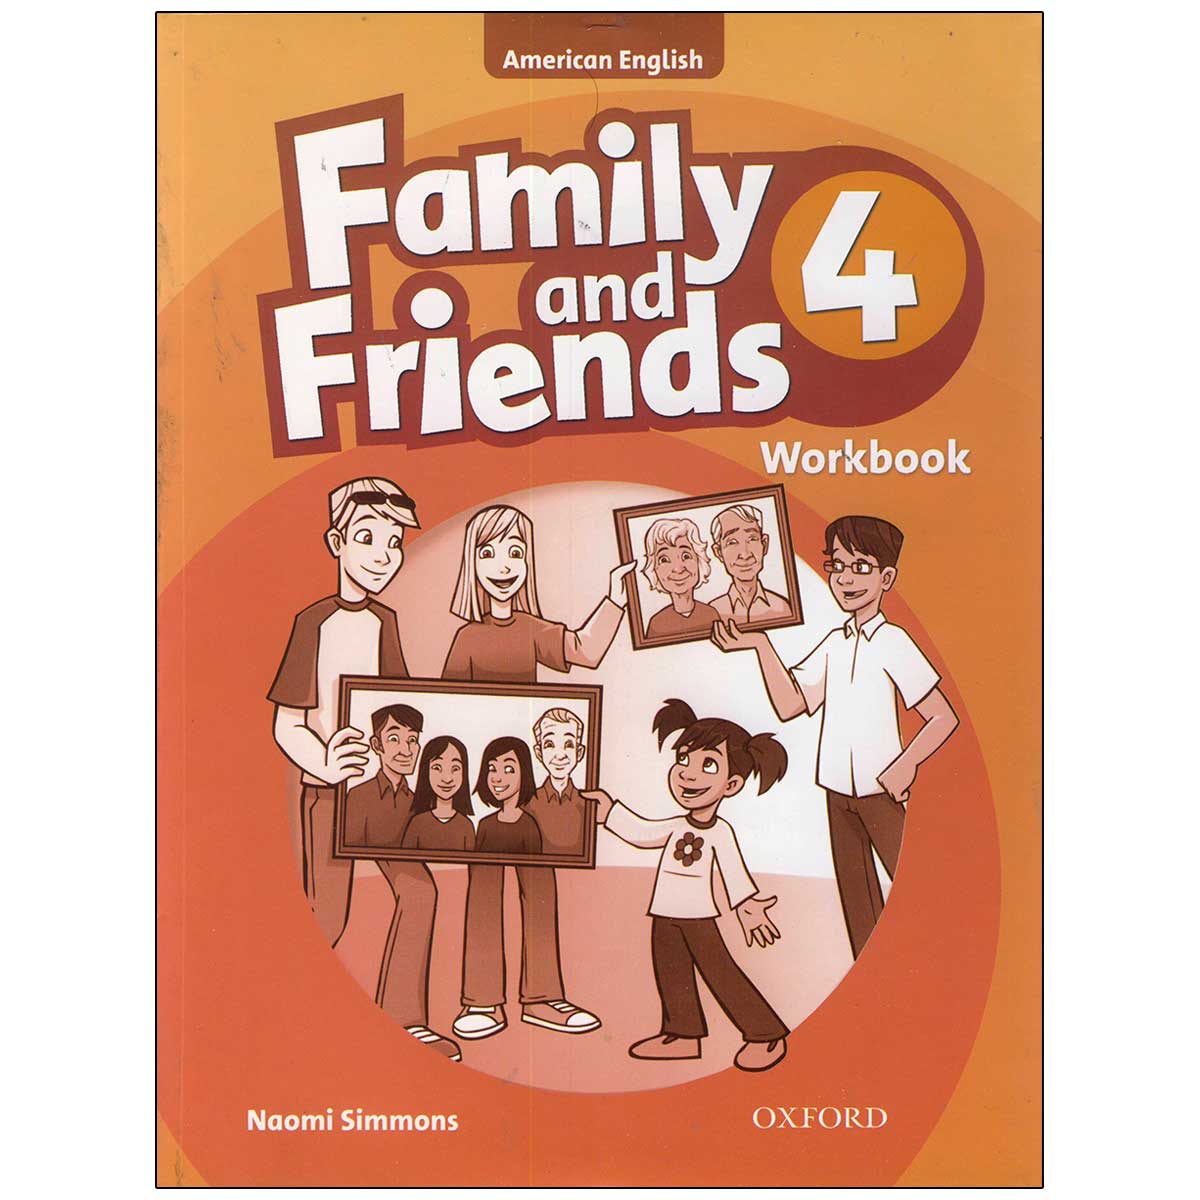 Английский язык friends 3 workbook. Family and friends 4. Family and friends 4 Workbook. Оксфорд Family and friends 4. Famly ang friends 4 Workbook.